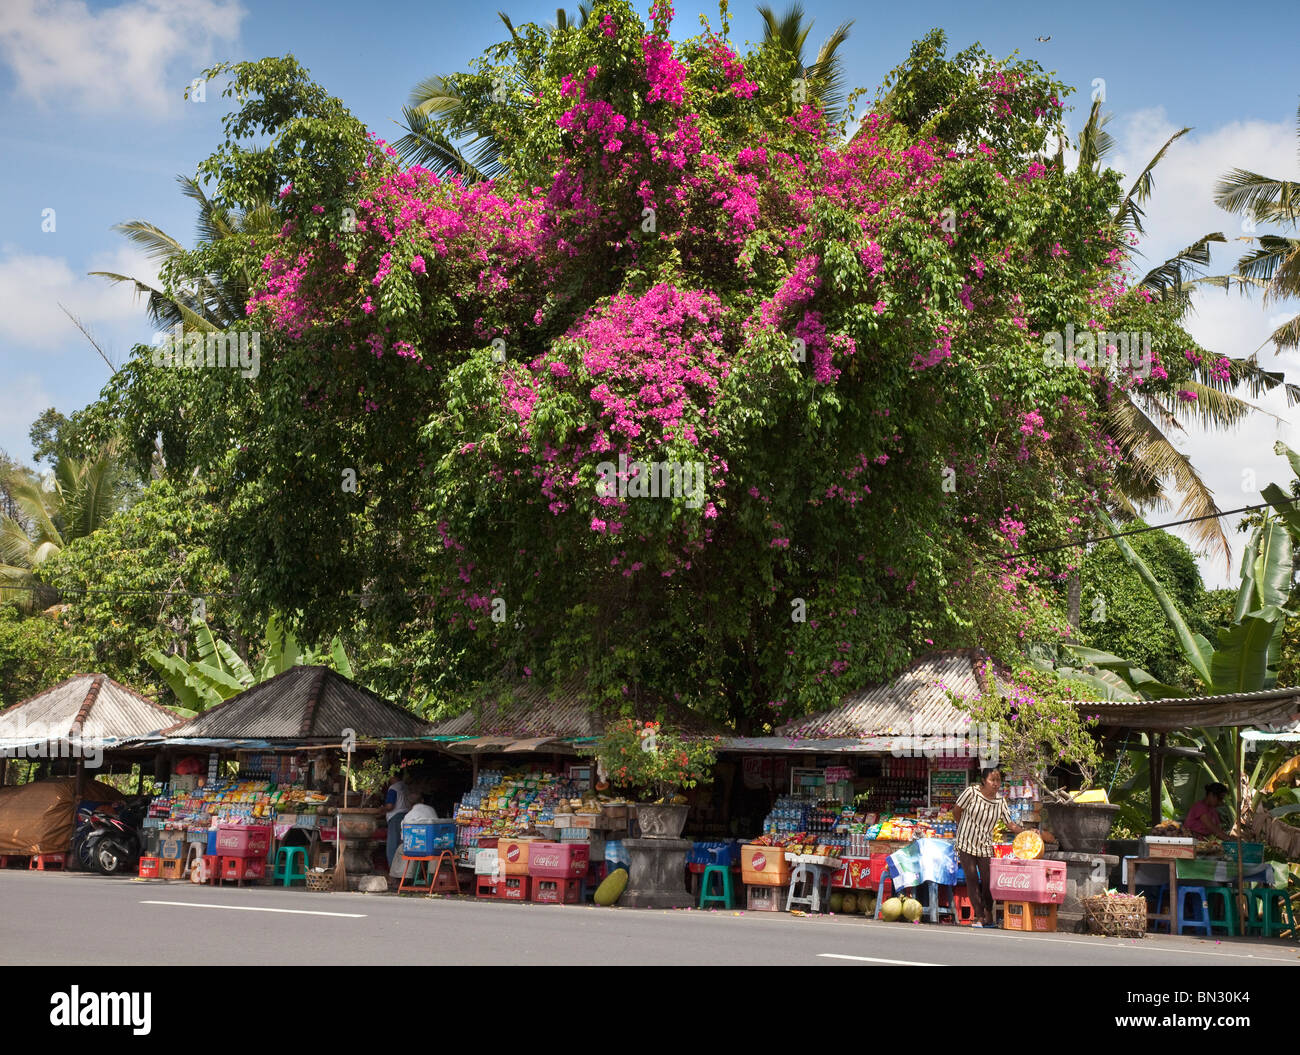 Molto grande magenta fioritura di Bougainvillea arbusto, al di sopra di un mercato stradale striscia, Bali, Indonesia Foto Stock